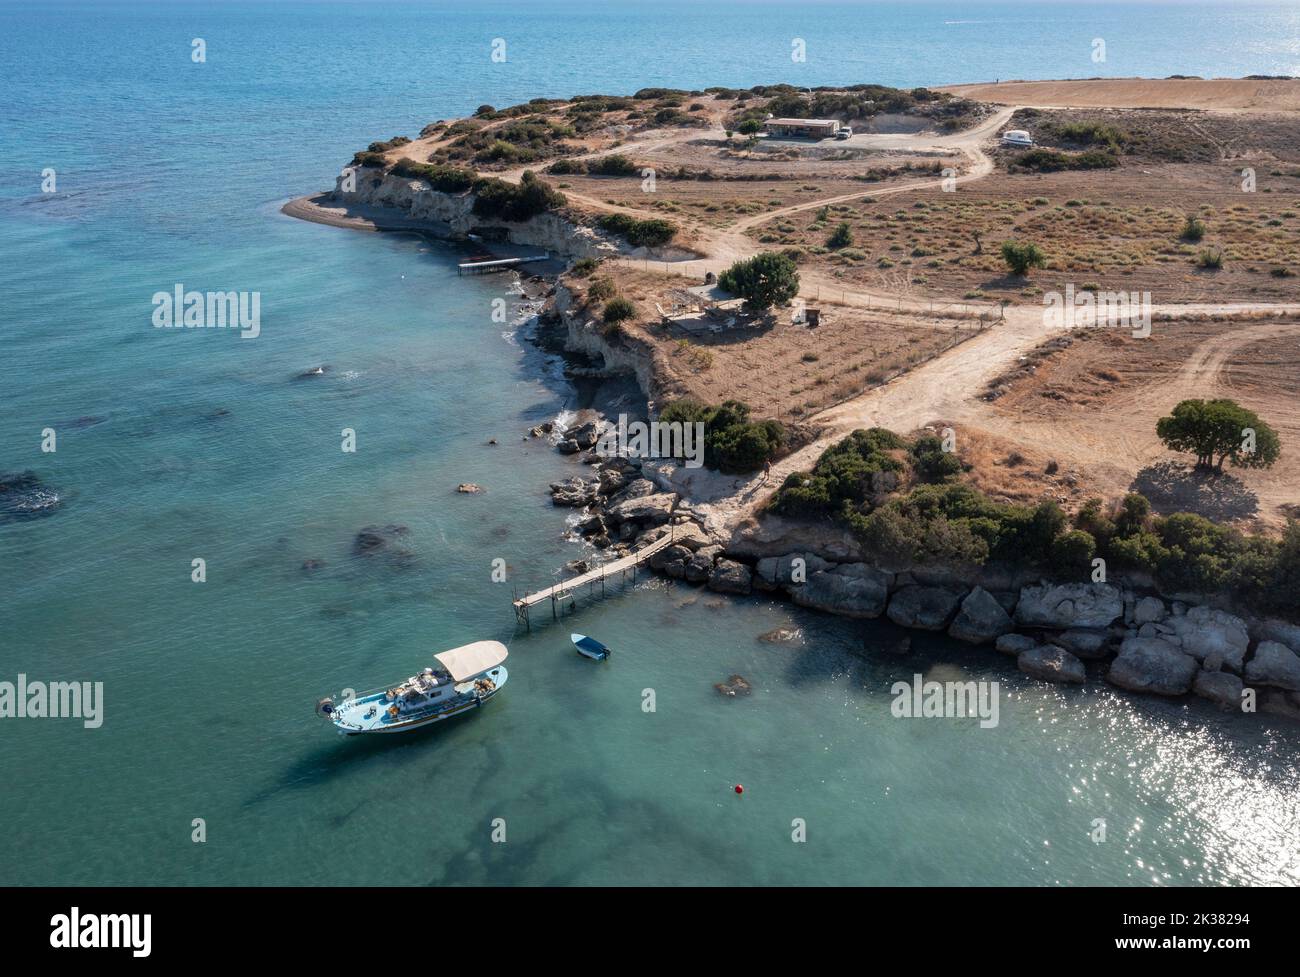 Vista aérea de un barco de pesca amarrado en la bahía de Avdimou, distrito de Limassol en Chipre. Foto de stock